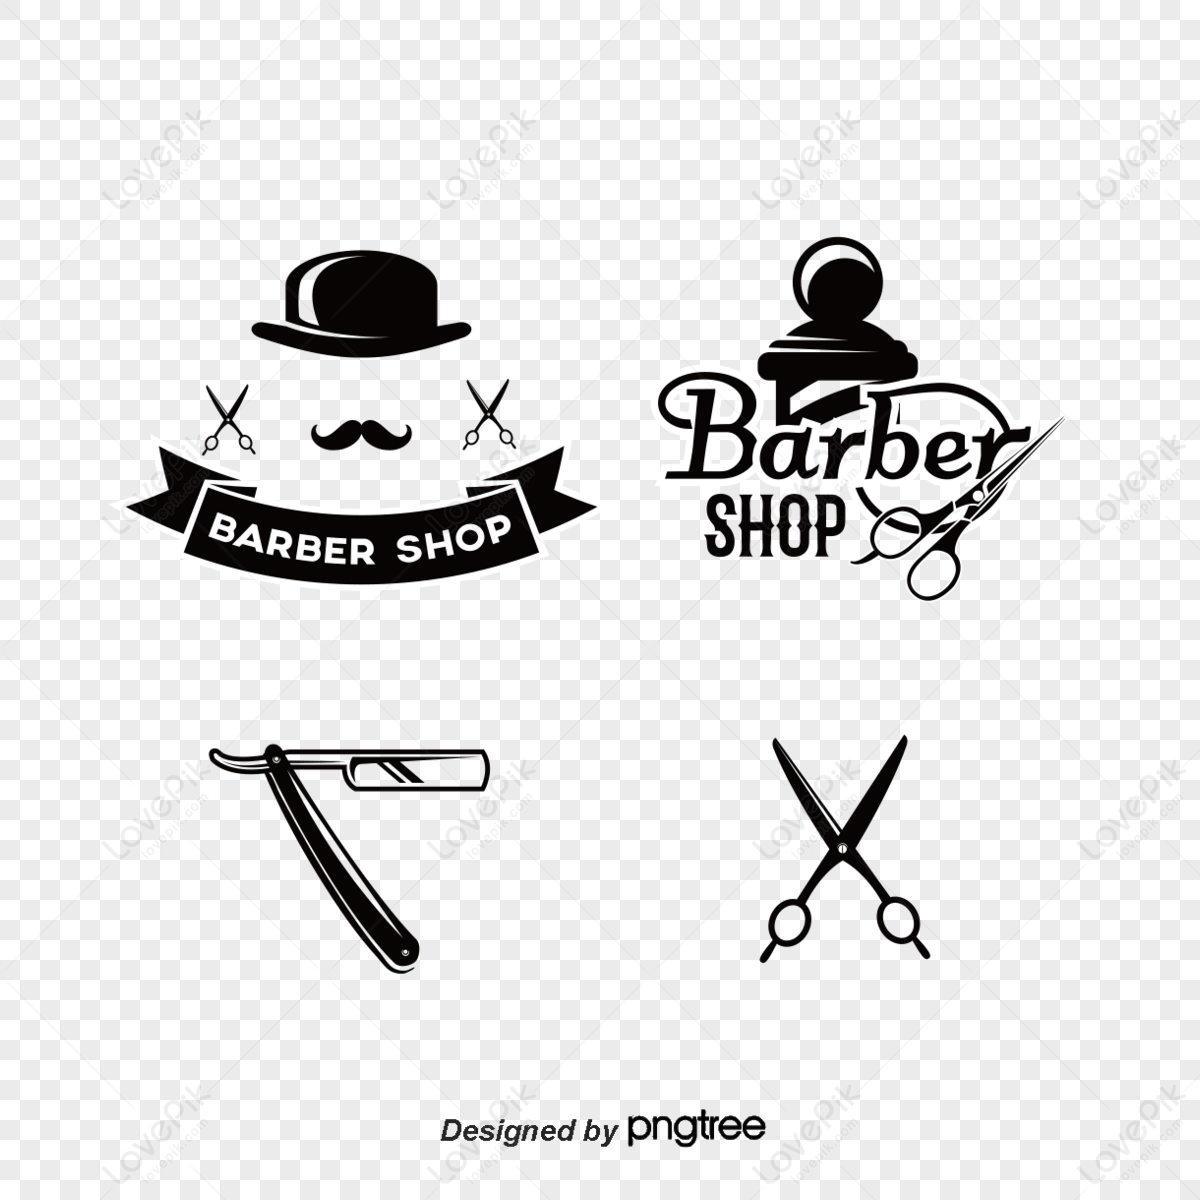 Barber Shop Logo PNG – Free Download